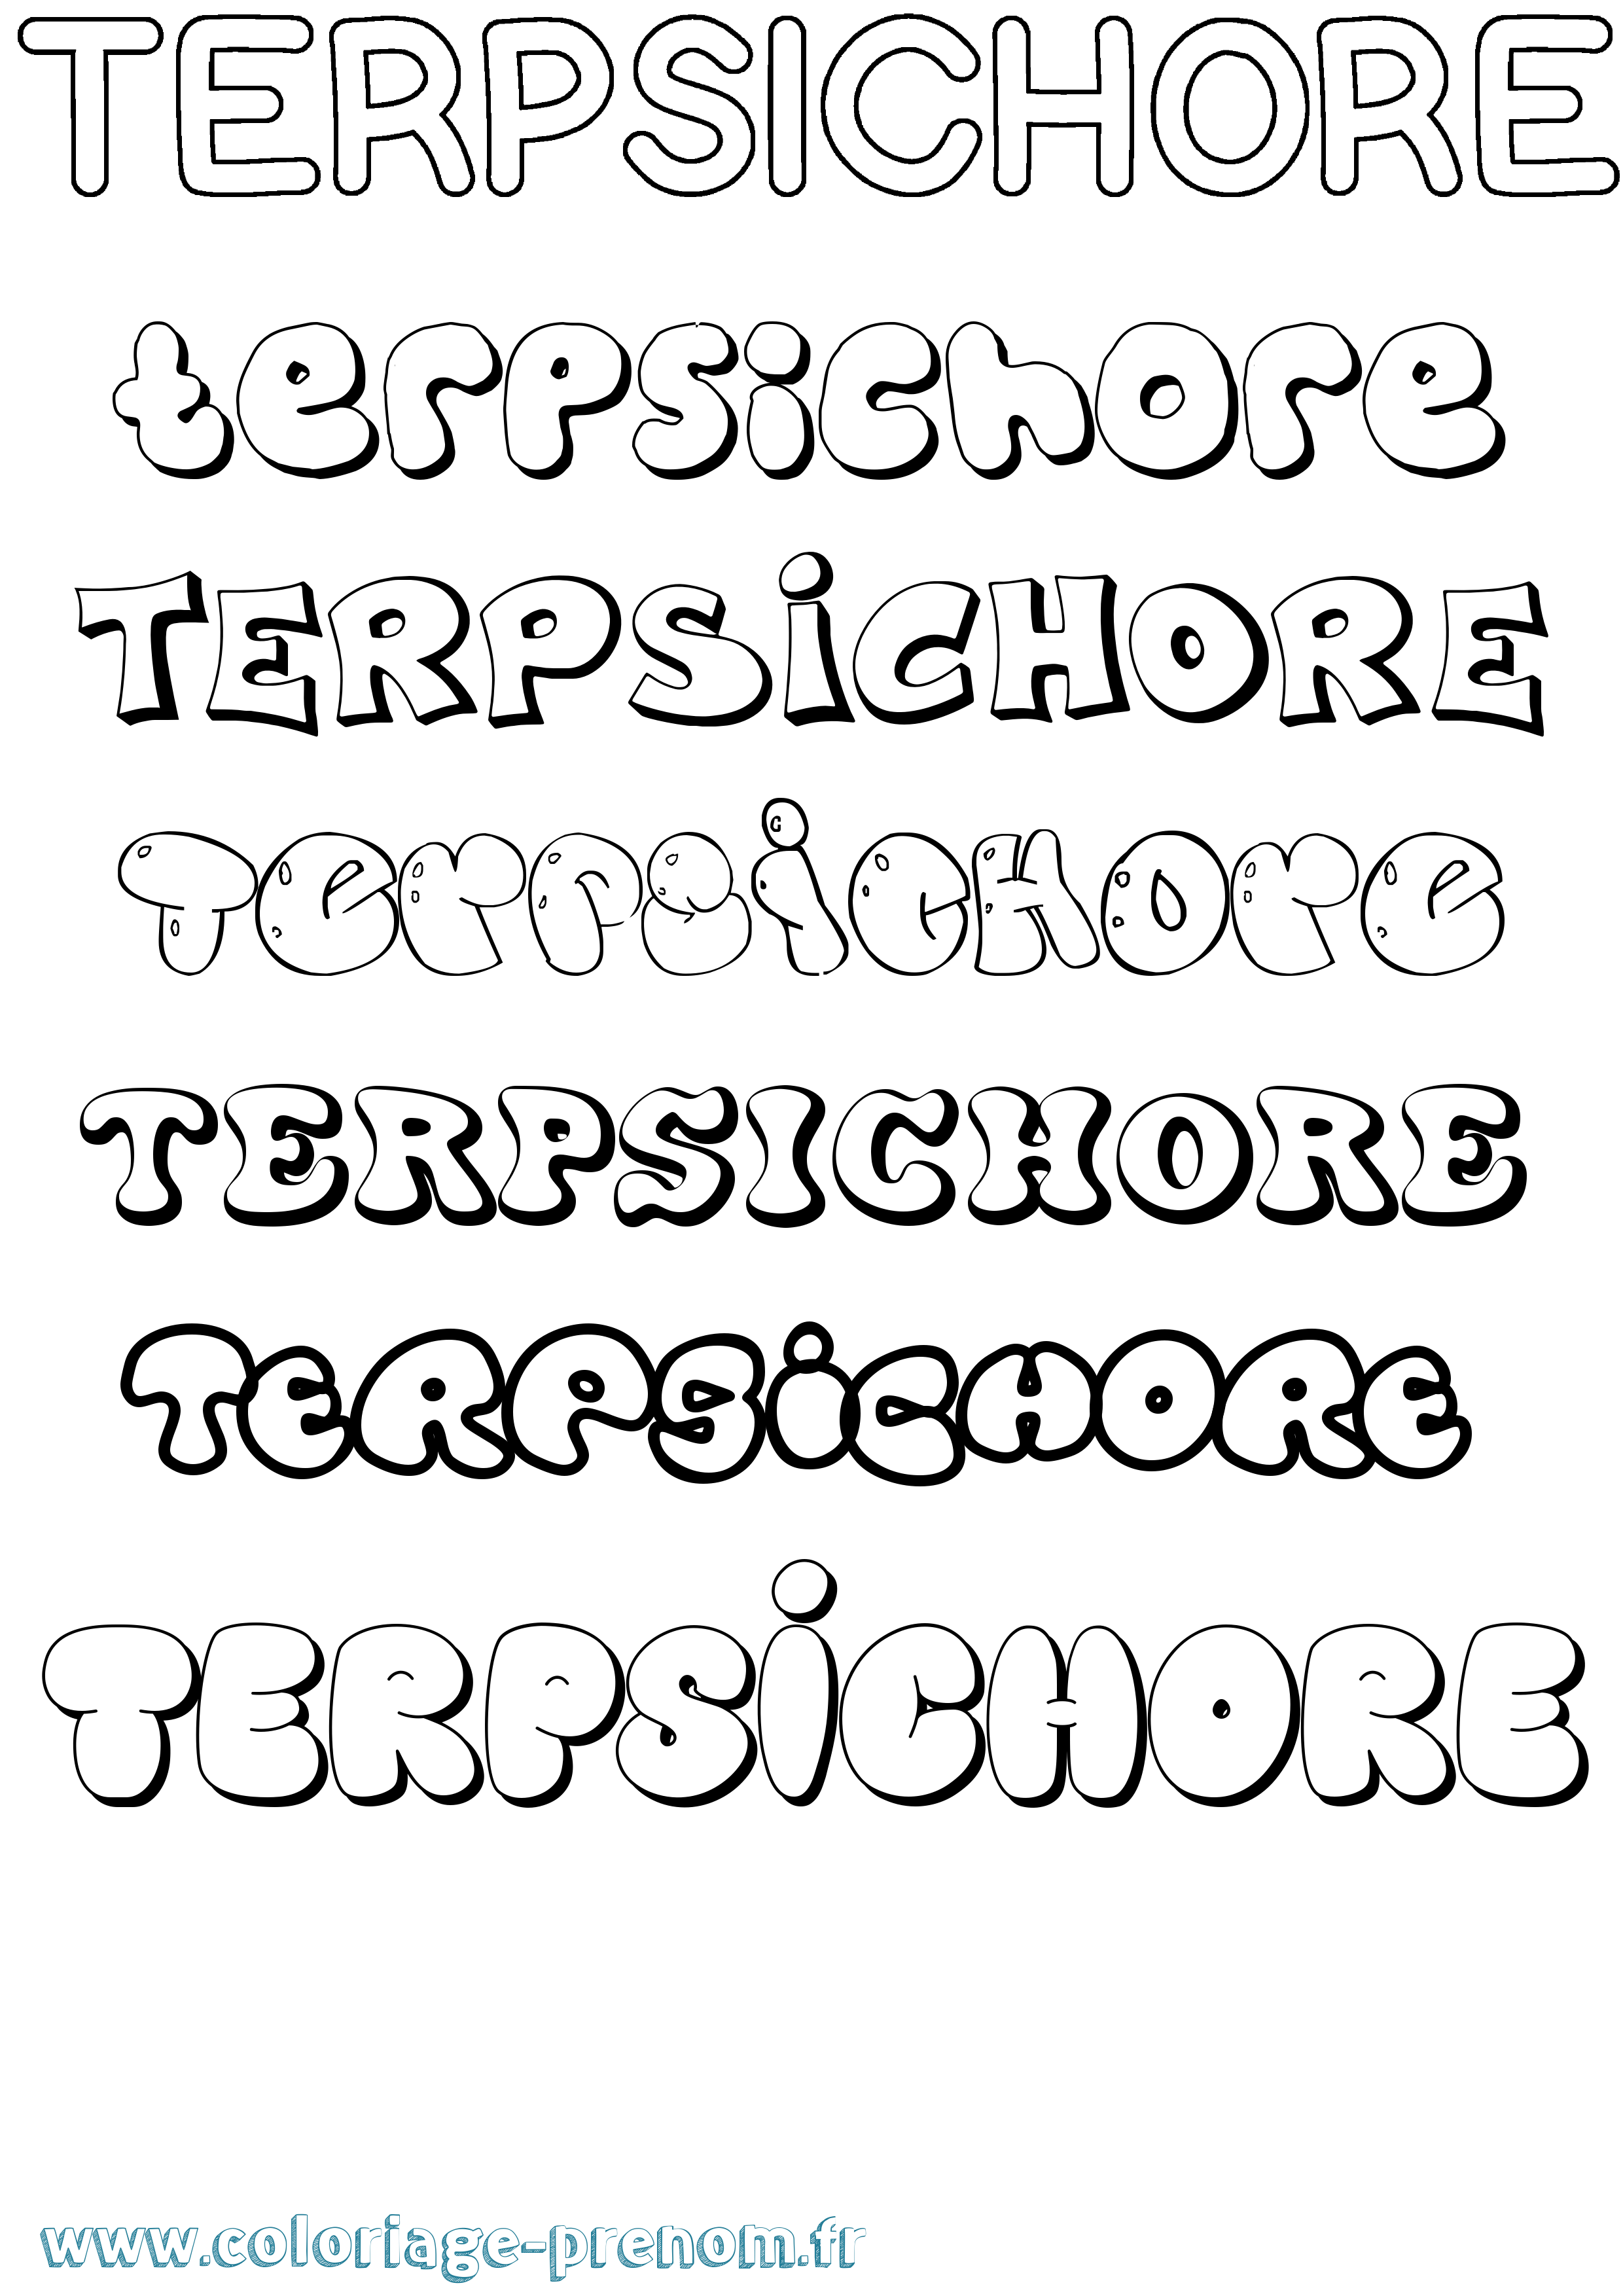 Coloriage prénom Terpsichore Bubble